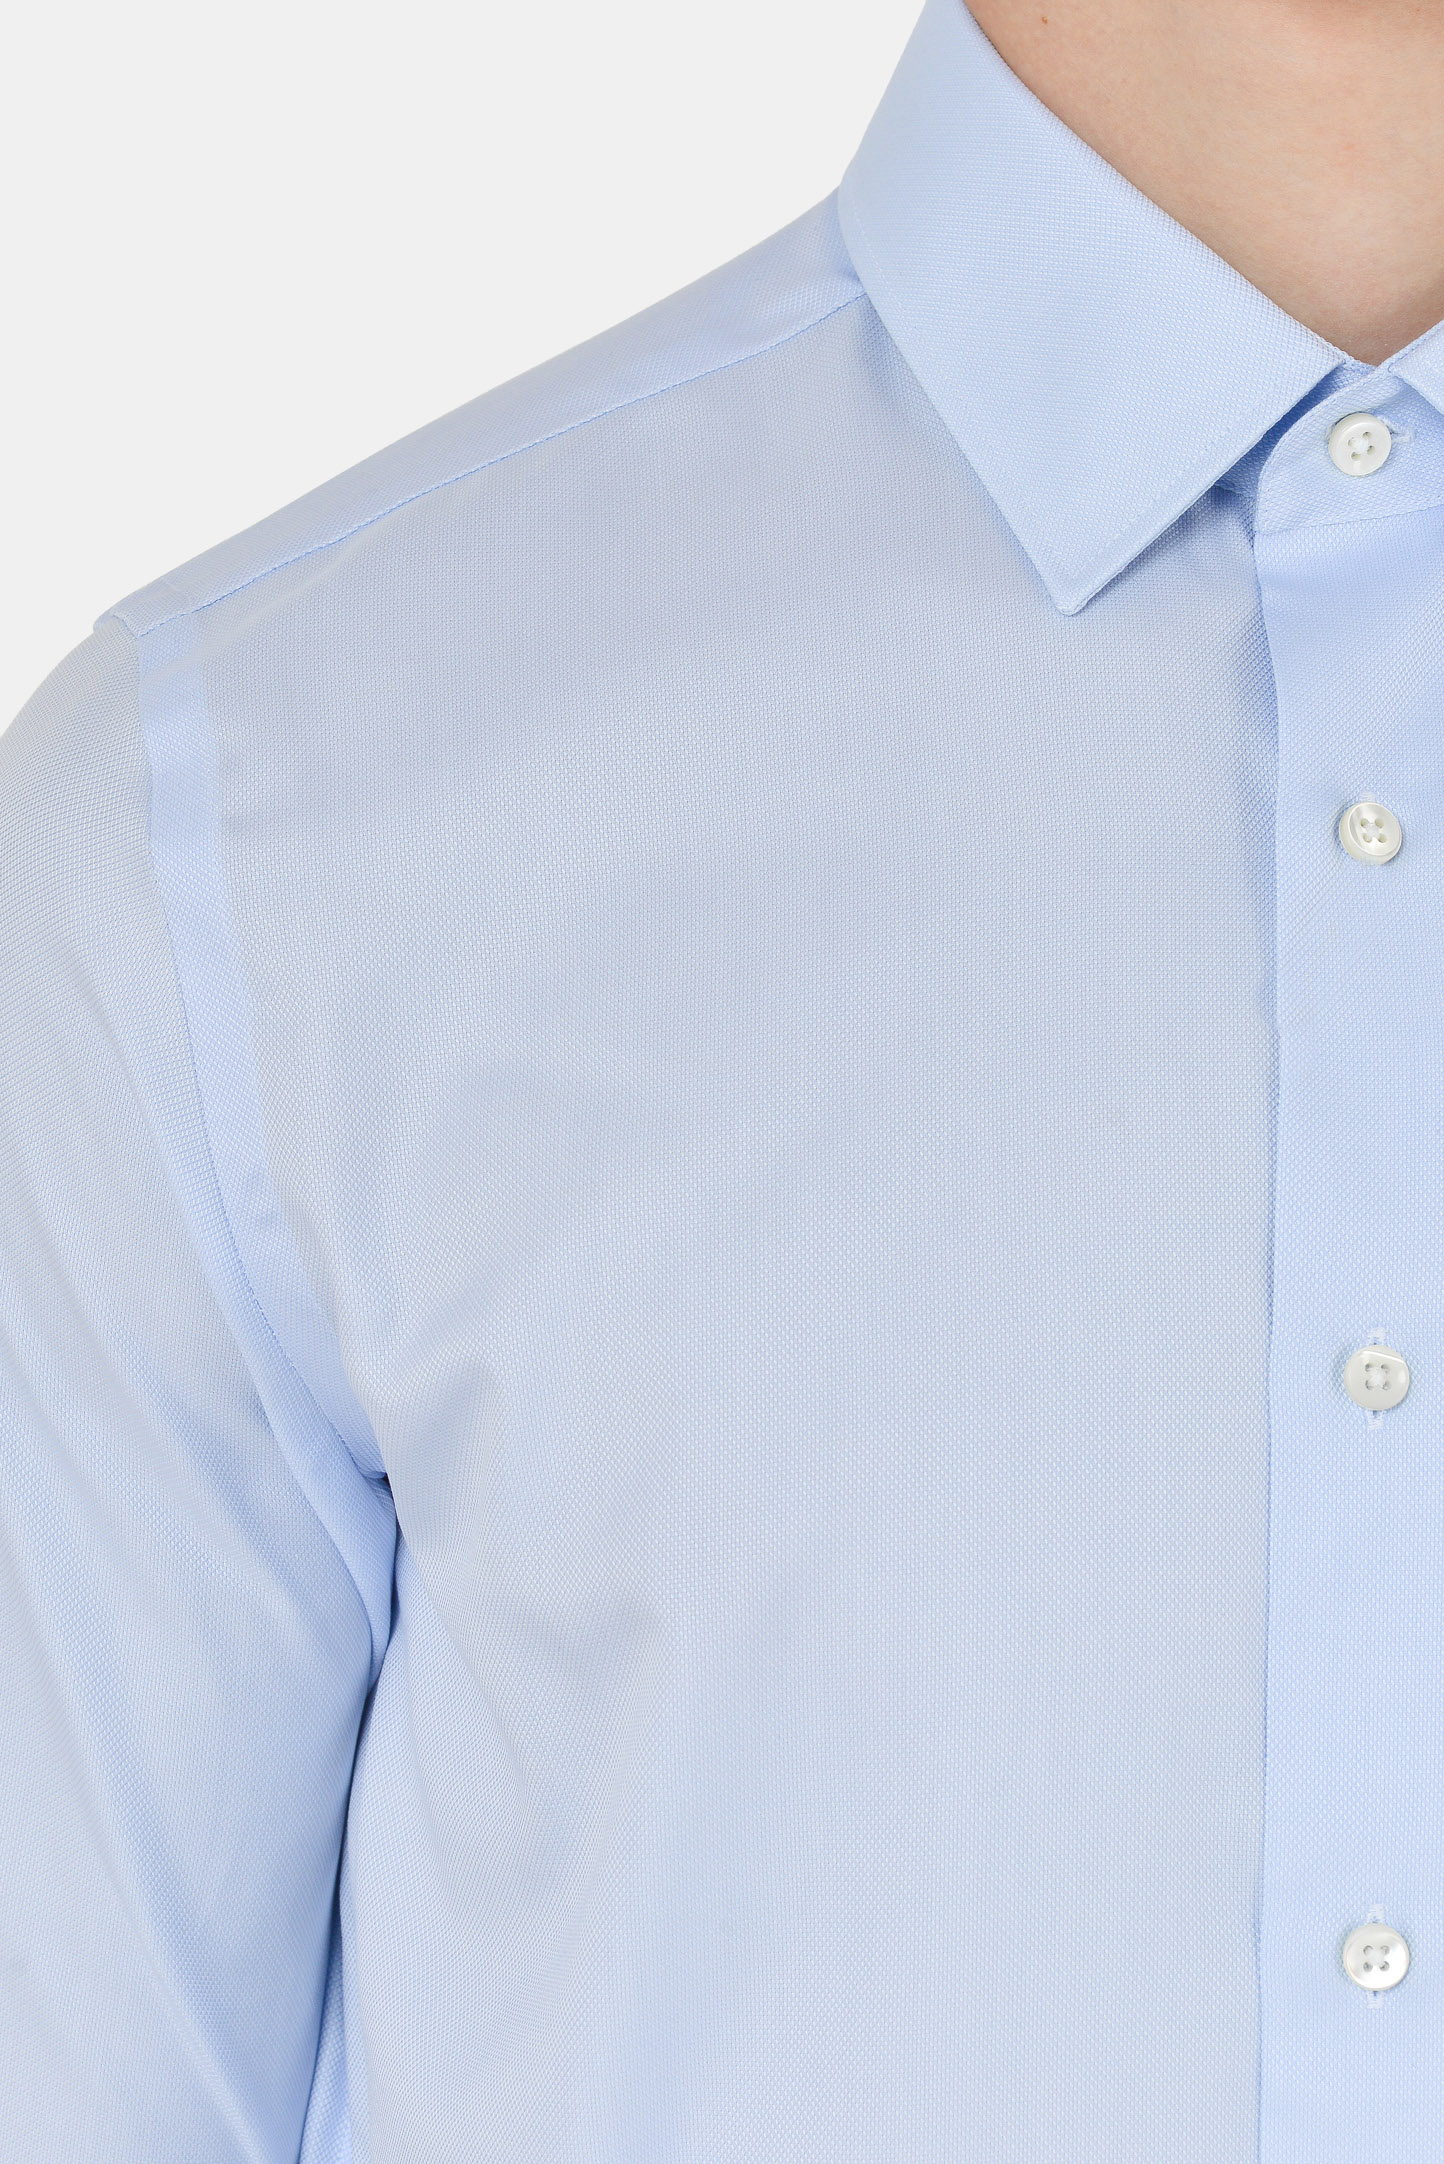 Рубашка CANALI GR01591/403, цвет: Голубой, Мужской